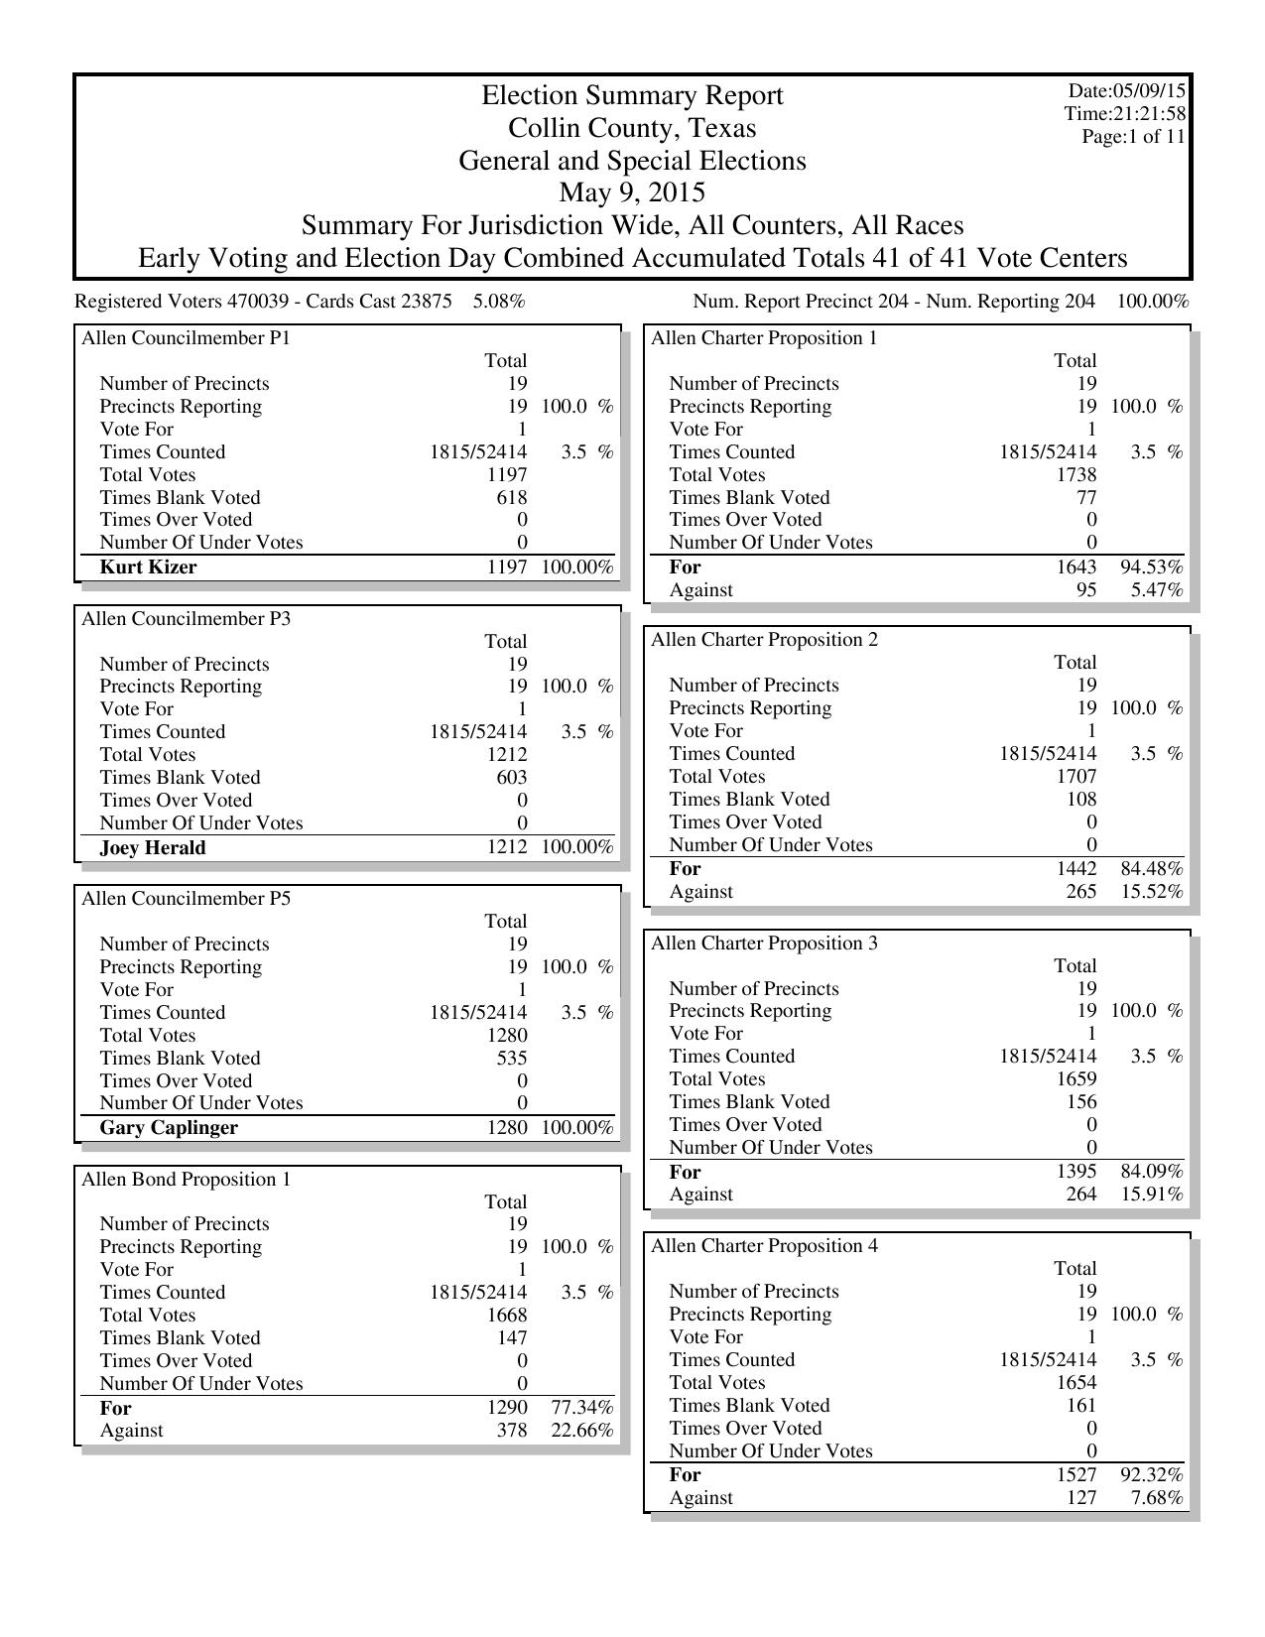 2004 popular vote totals